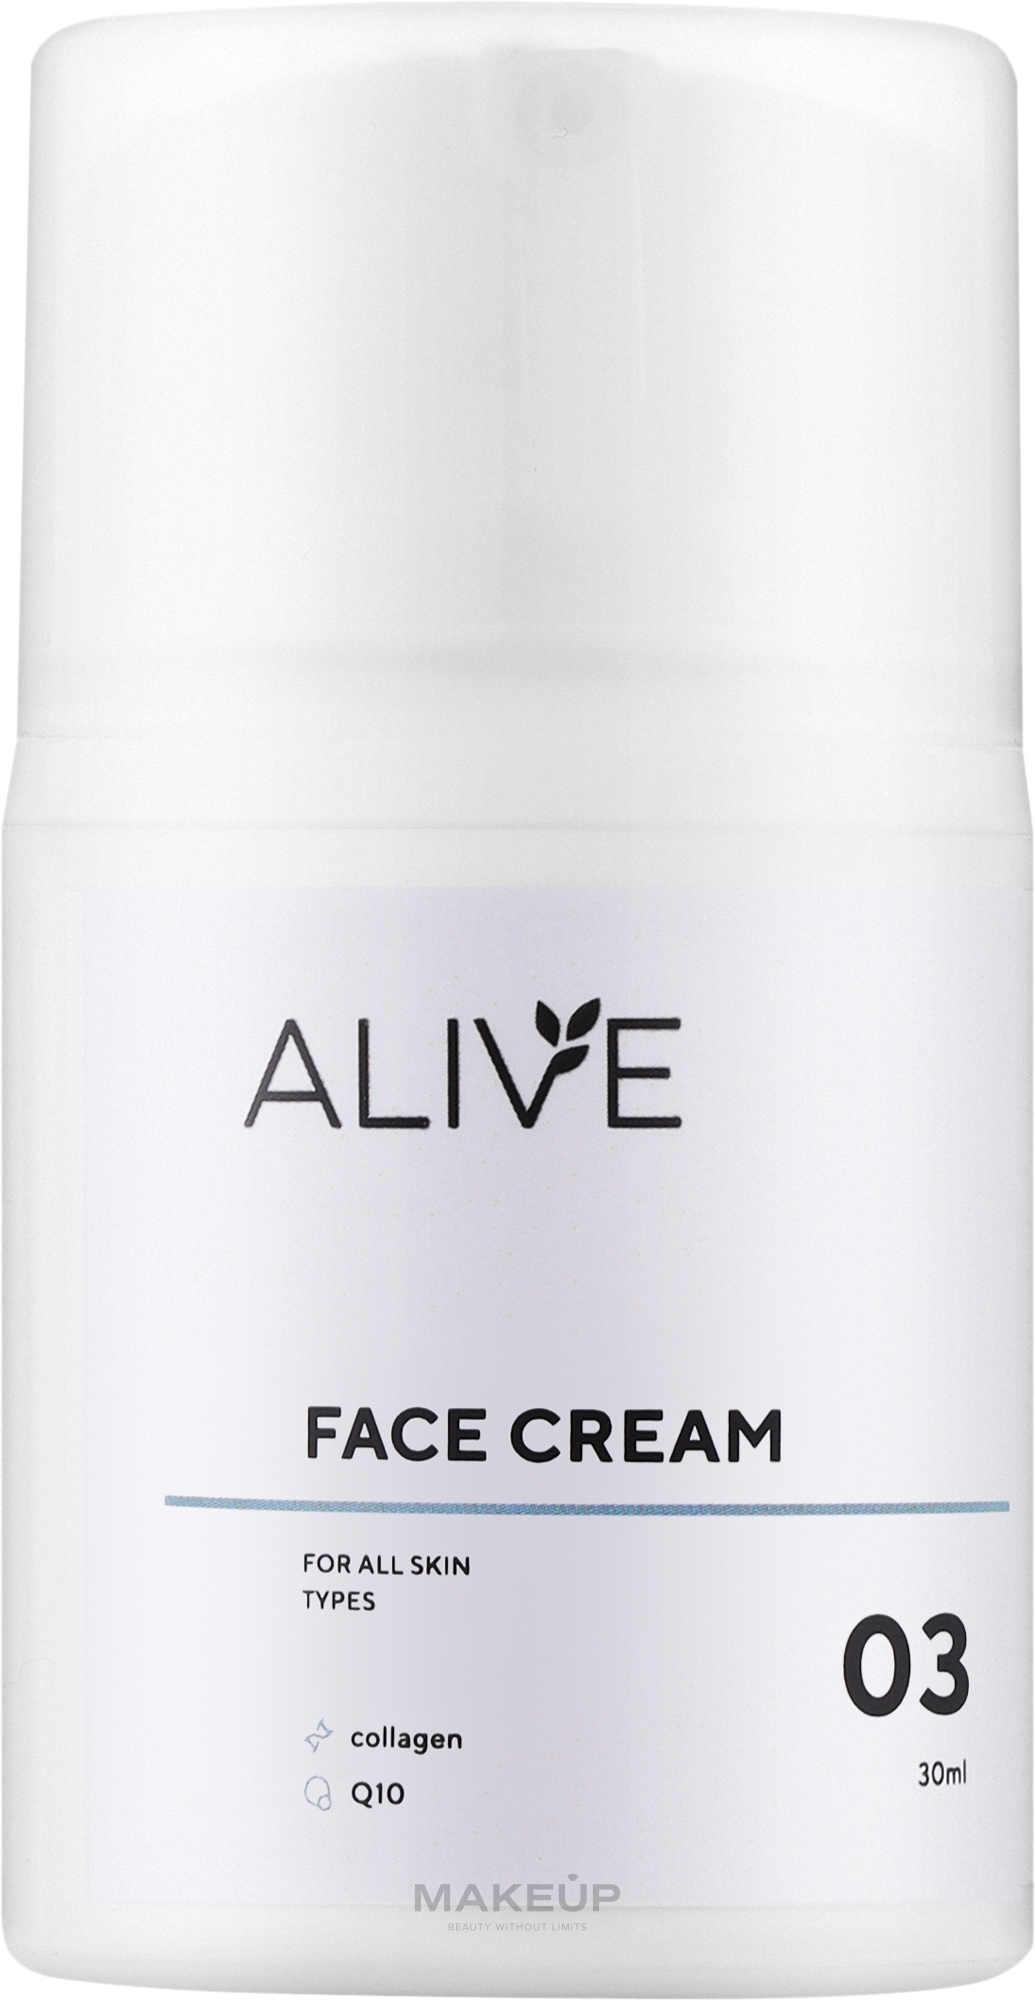 Крем для всіх типів шкіри для боротьби зі зморшками та їх профілактики - ALIVE Cosmetics Face Cream 03 — фото 30ml